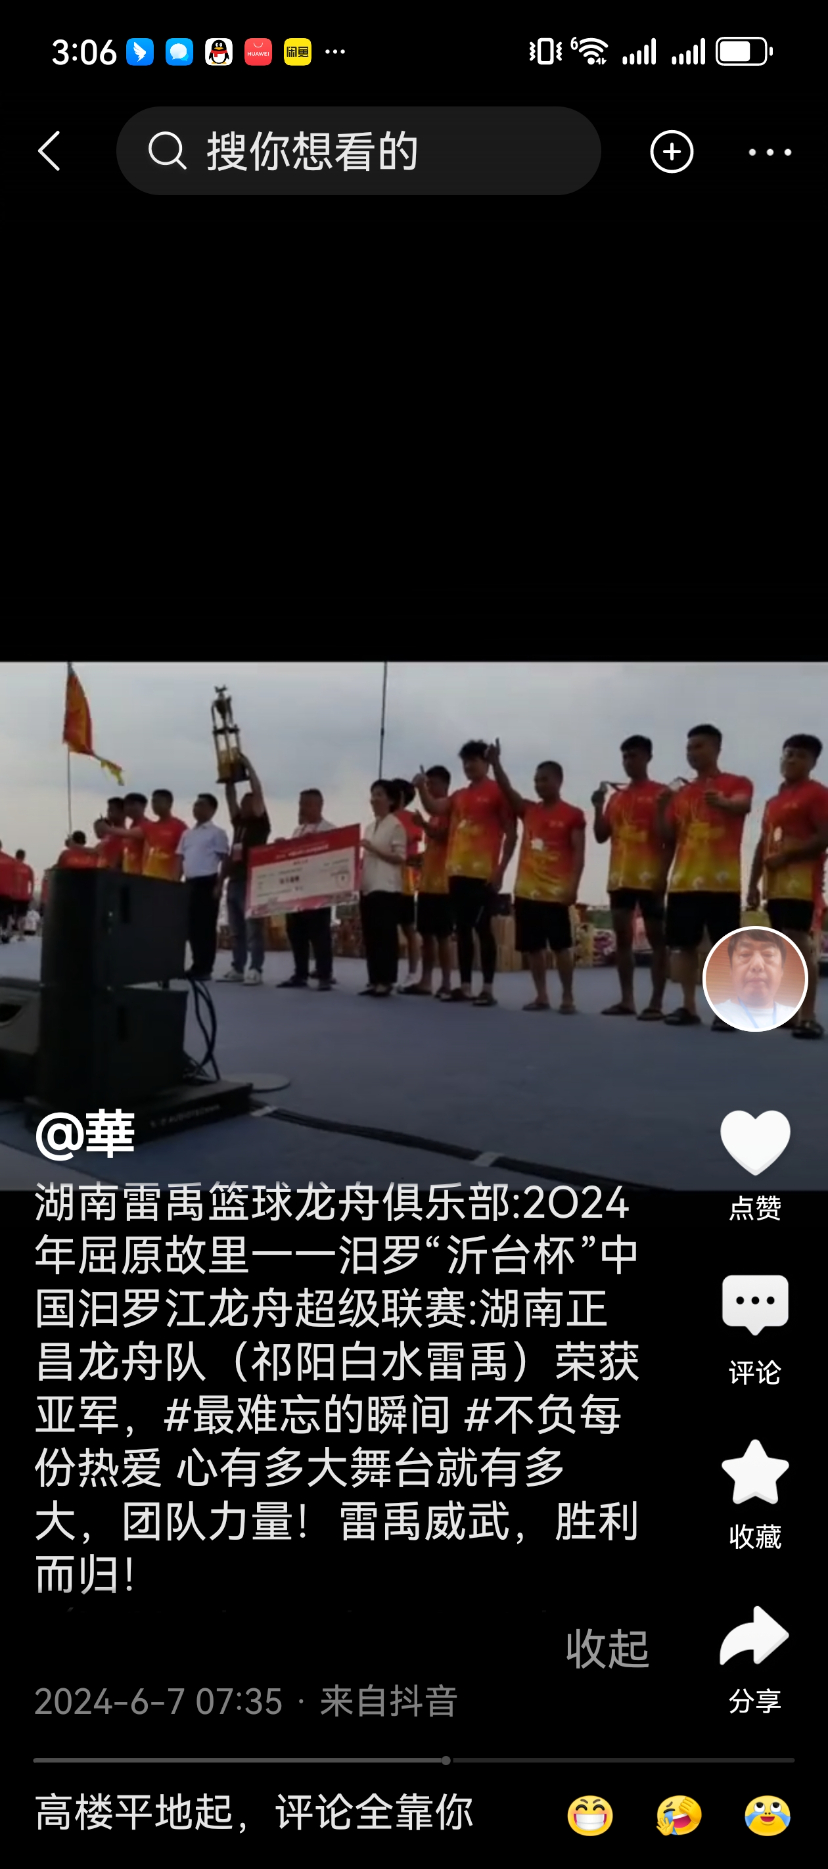 祁阳白水龙舟队在2024年汨罗龙舟赛上荣获第二名